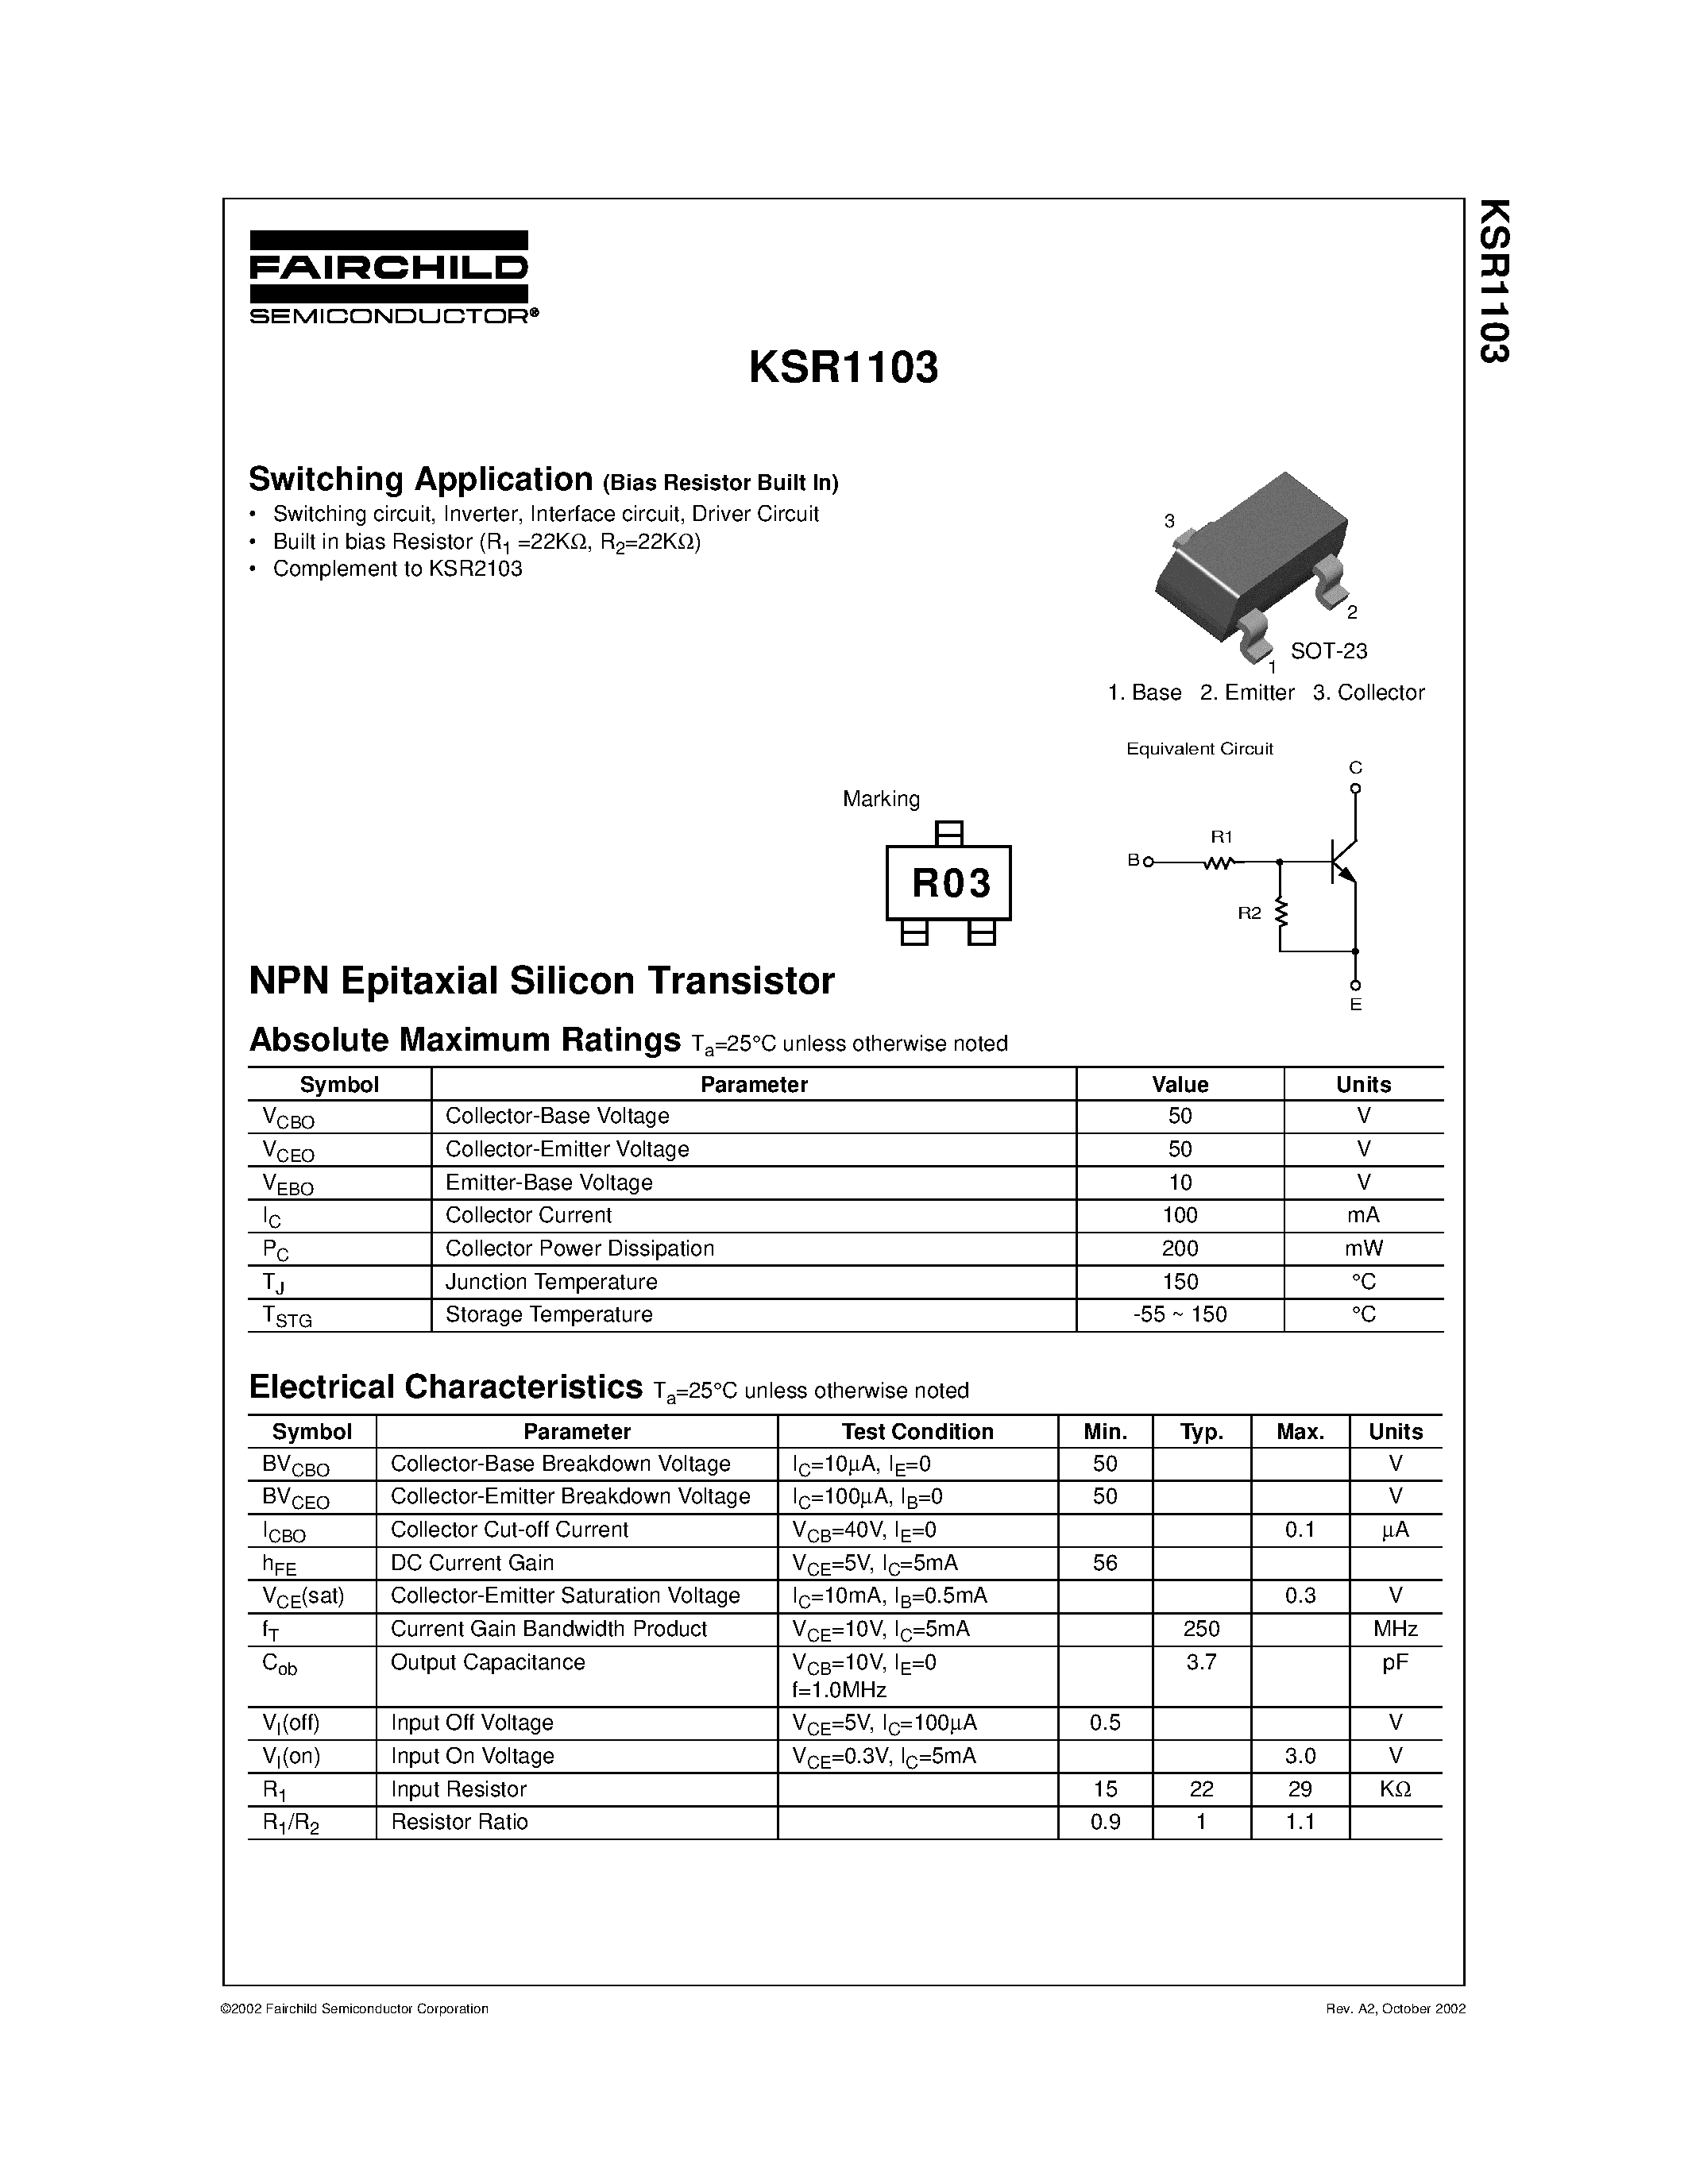 Datasheet KSR1103 - Switching Application page 1